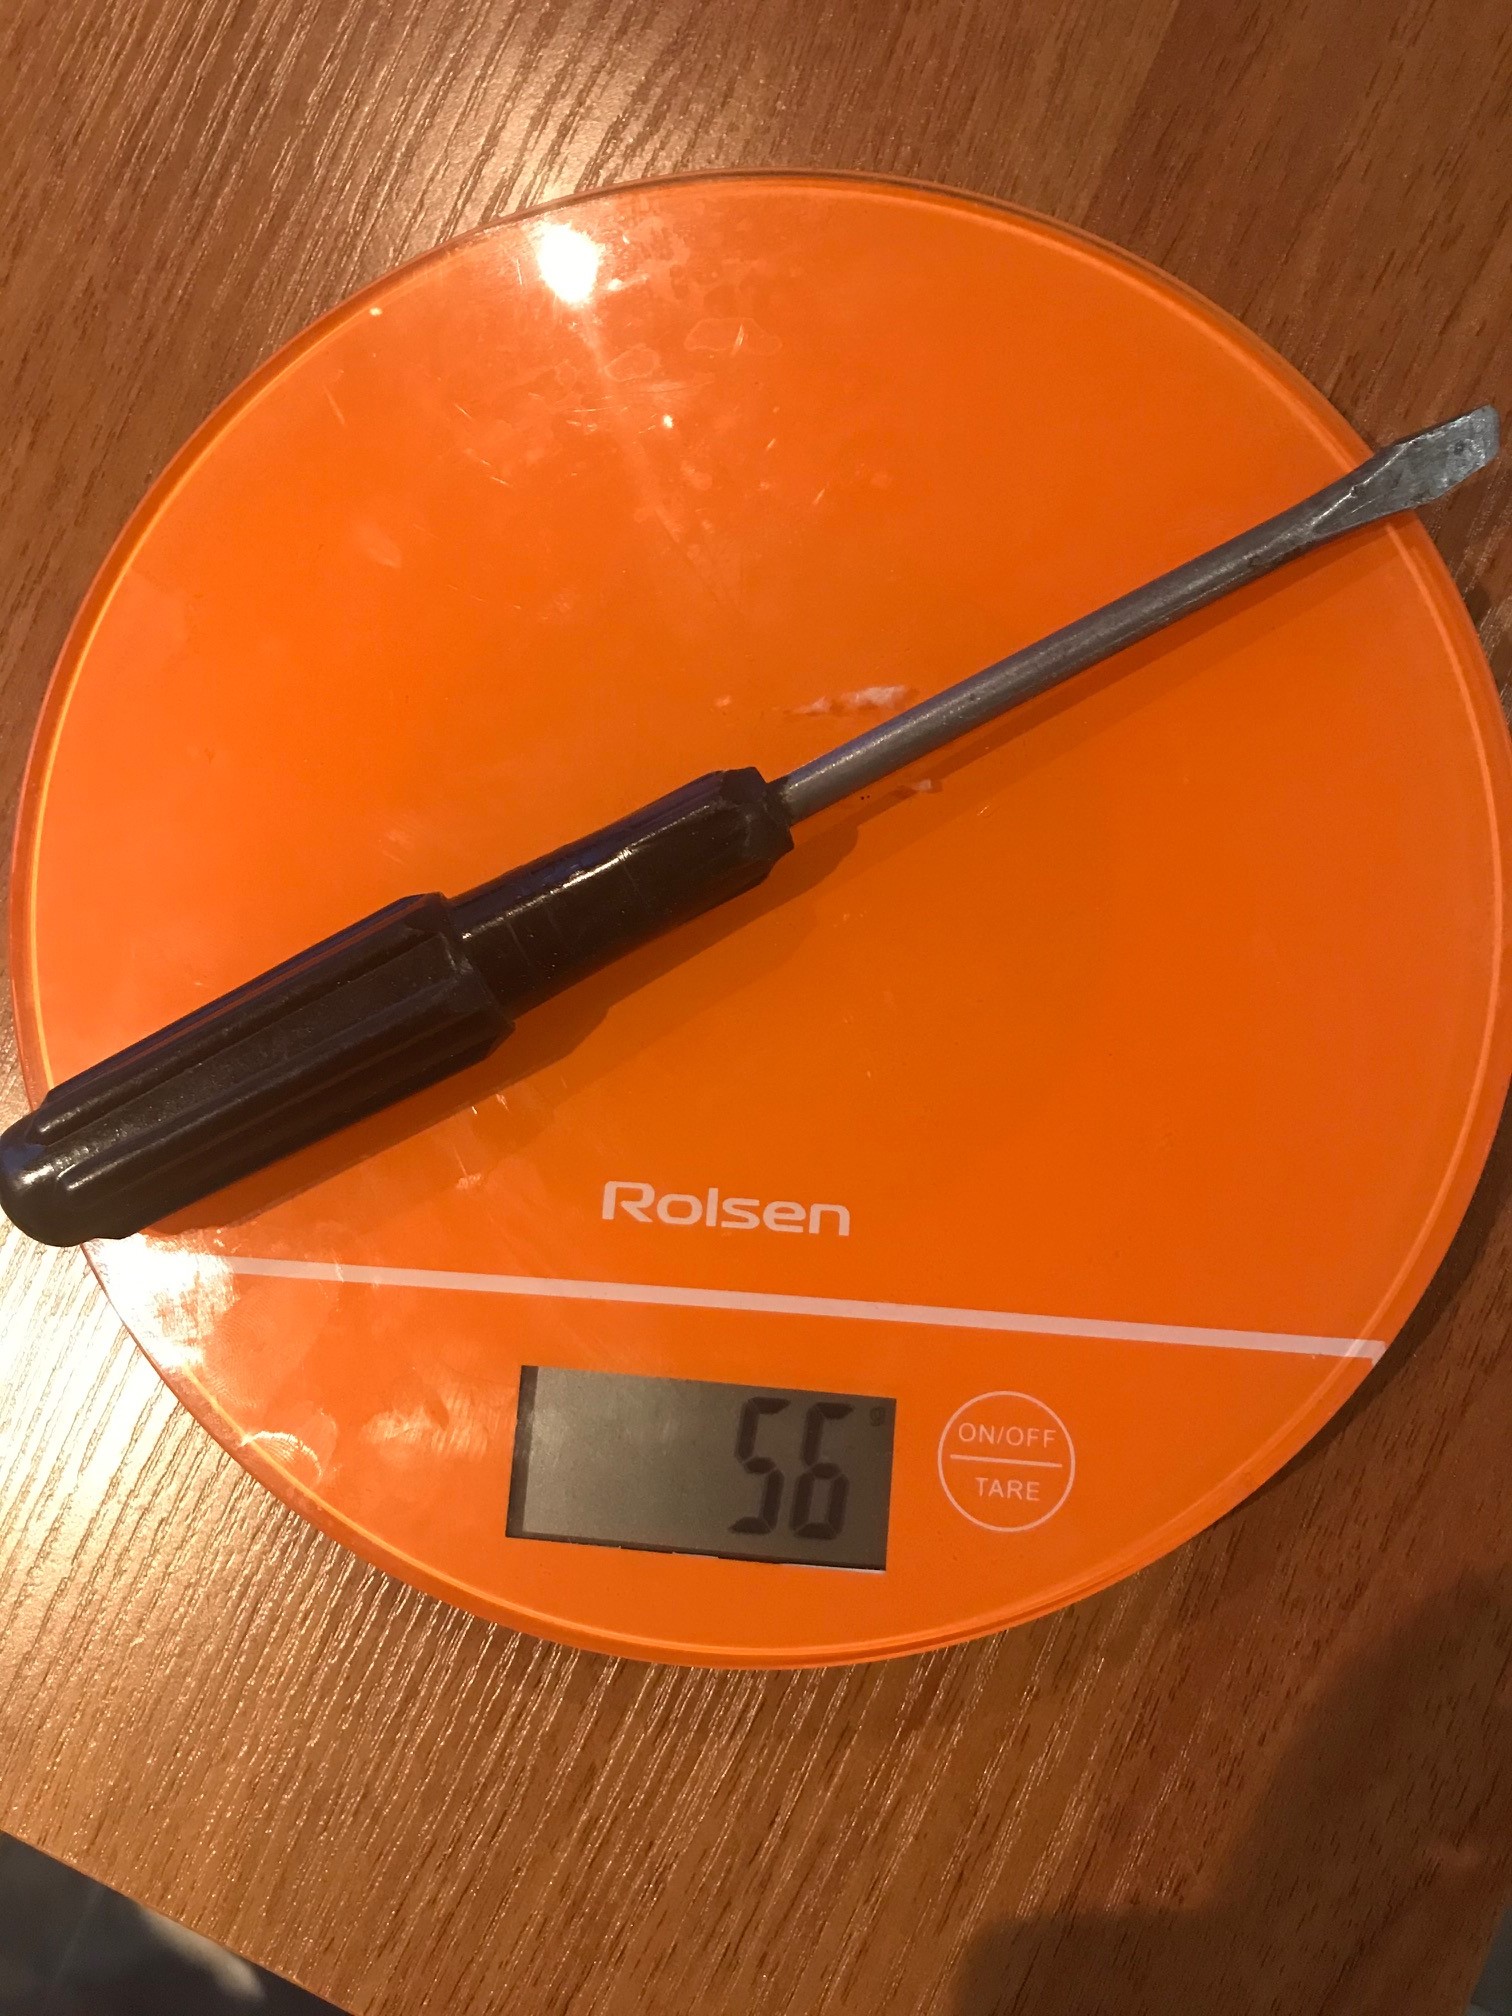 screwdriver weight - minus